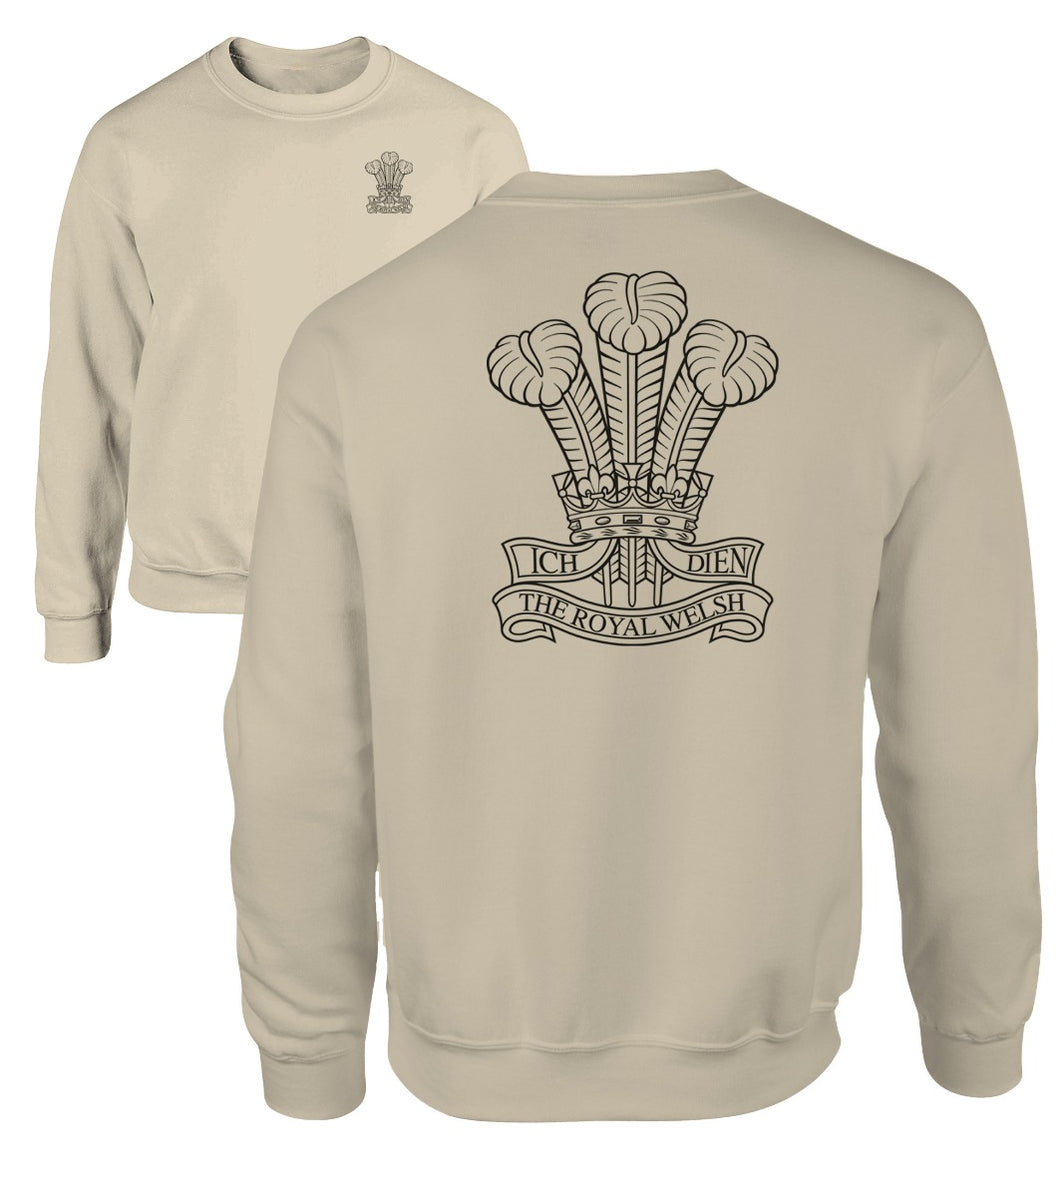 Double Printed Royal Welsh Sweatshirt